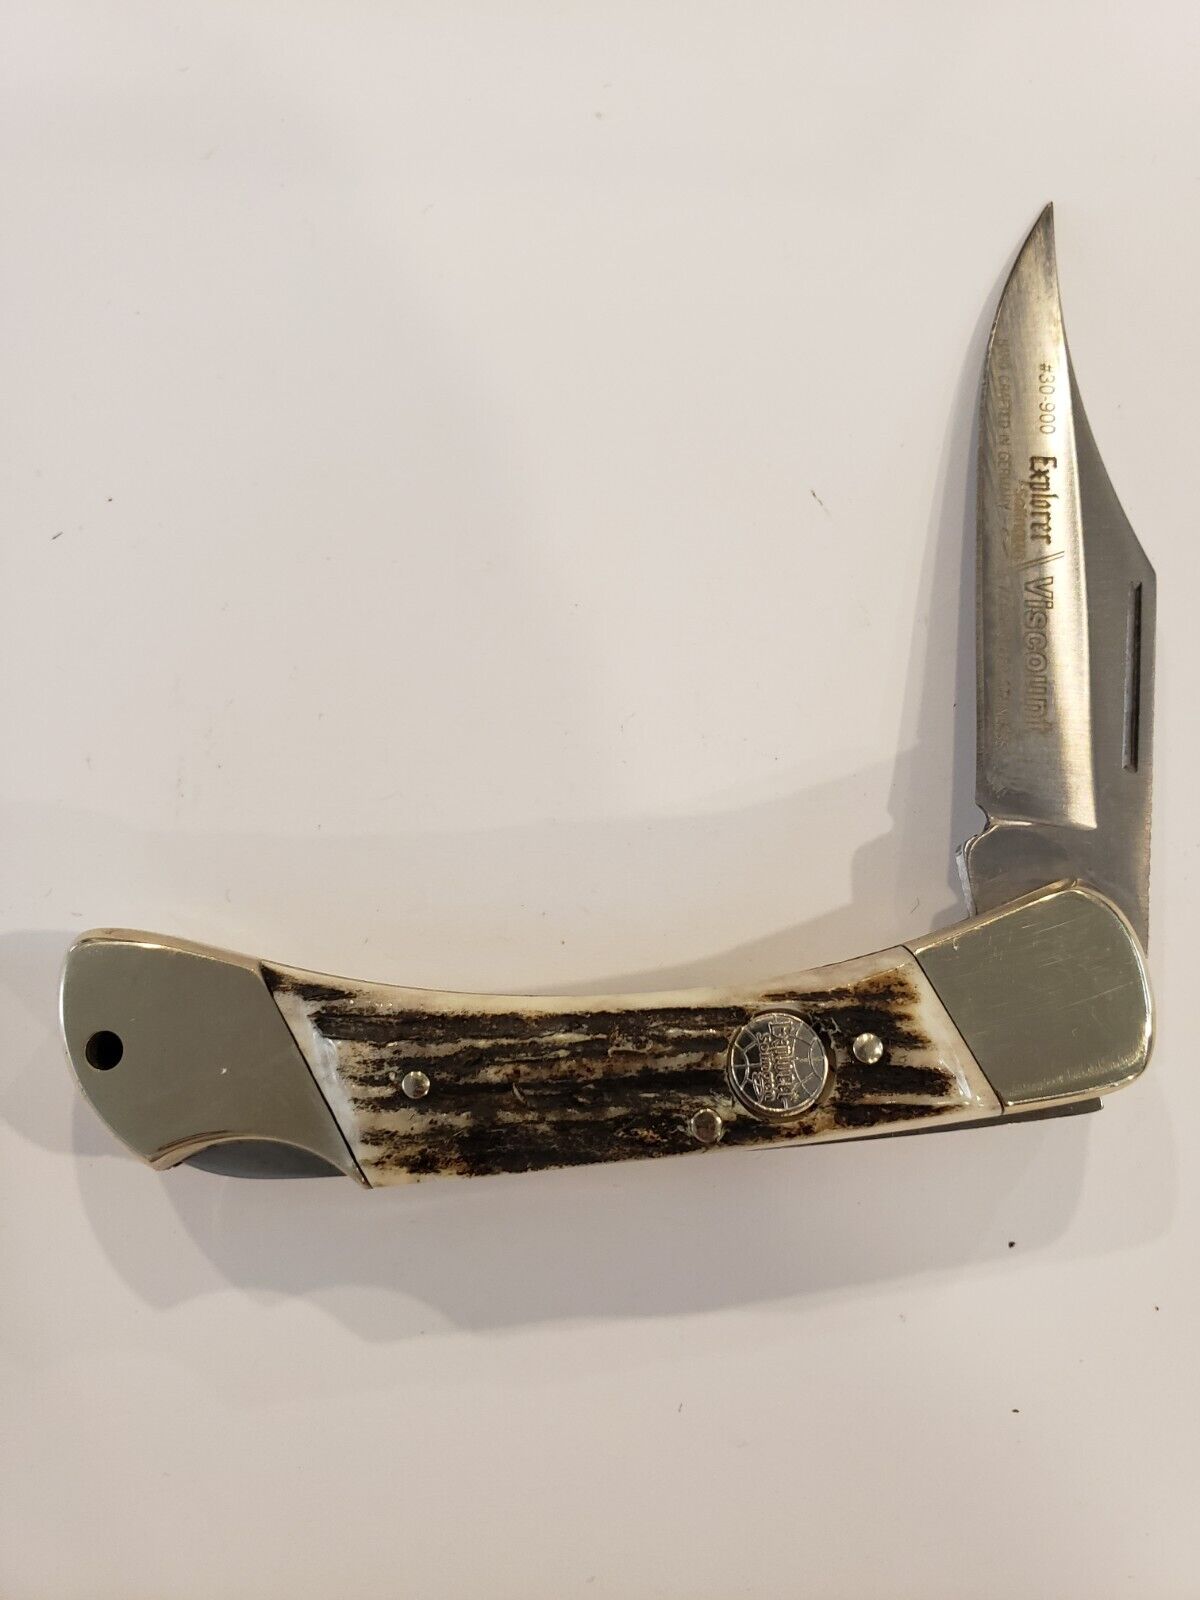 HotKey Knife Sale Solinger Explorer 30-900 Viscount Knife